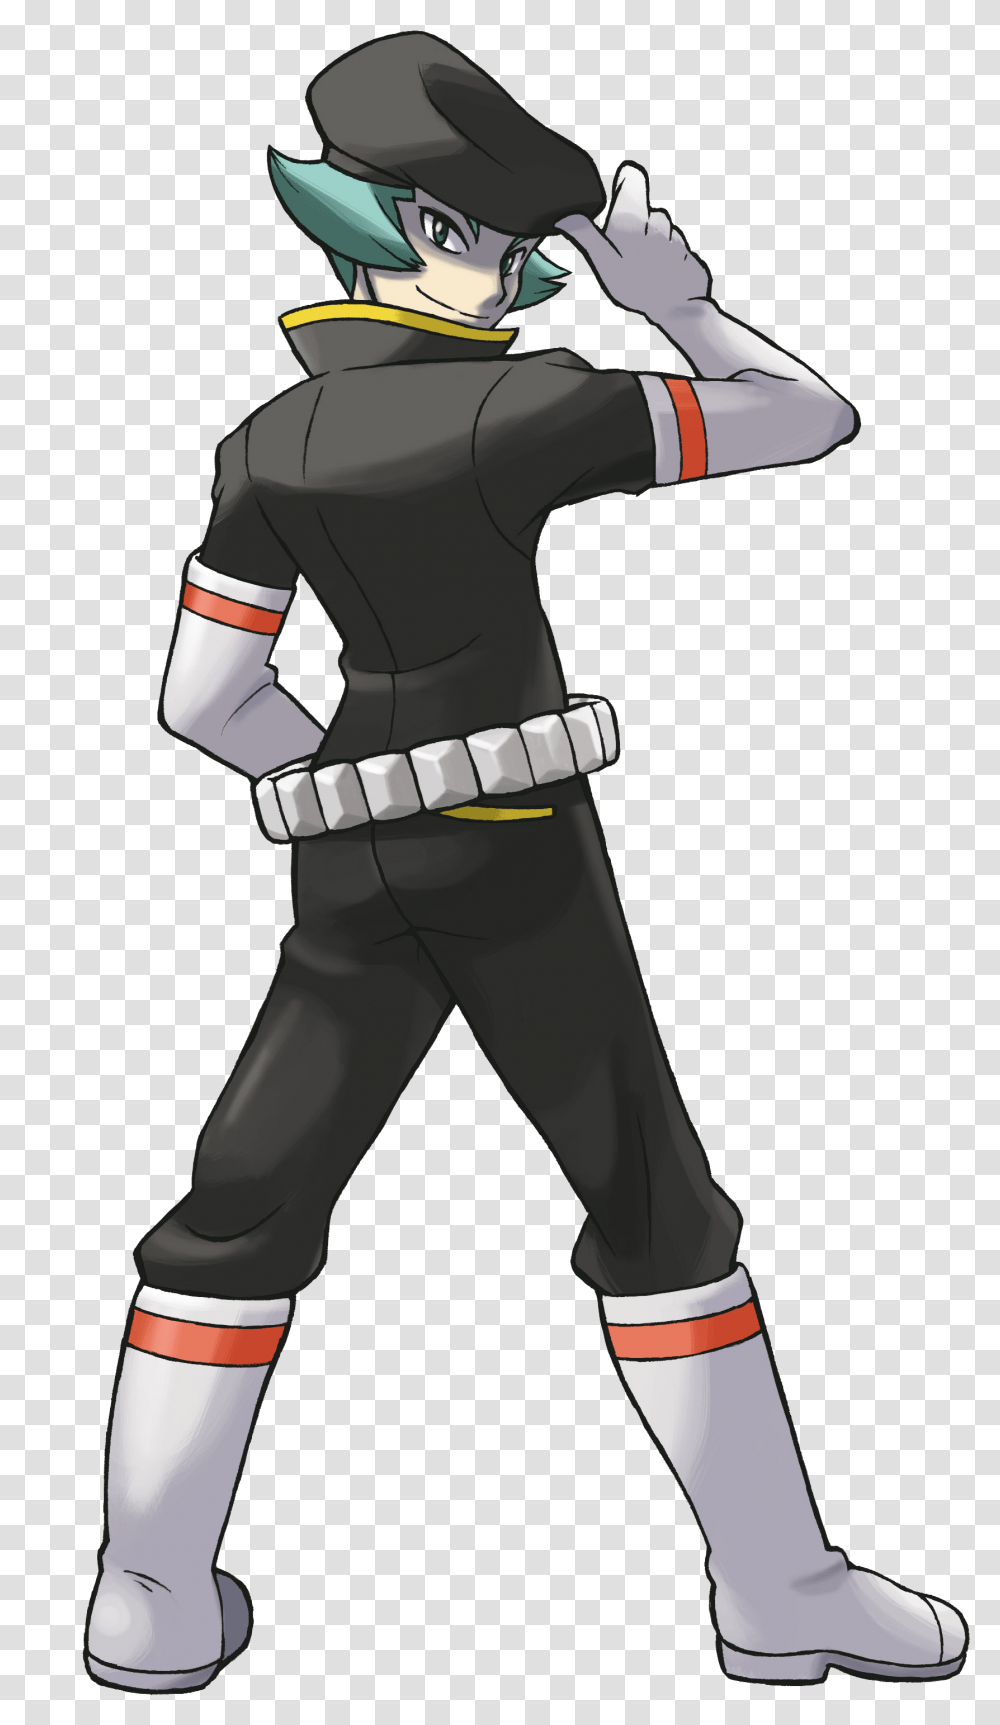 Pokemon Team Rocket Proton, Ninja, Person, Human, Costume Transparent Png